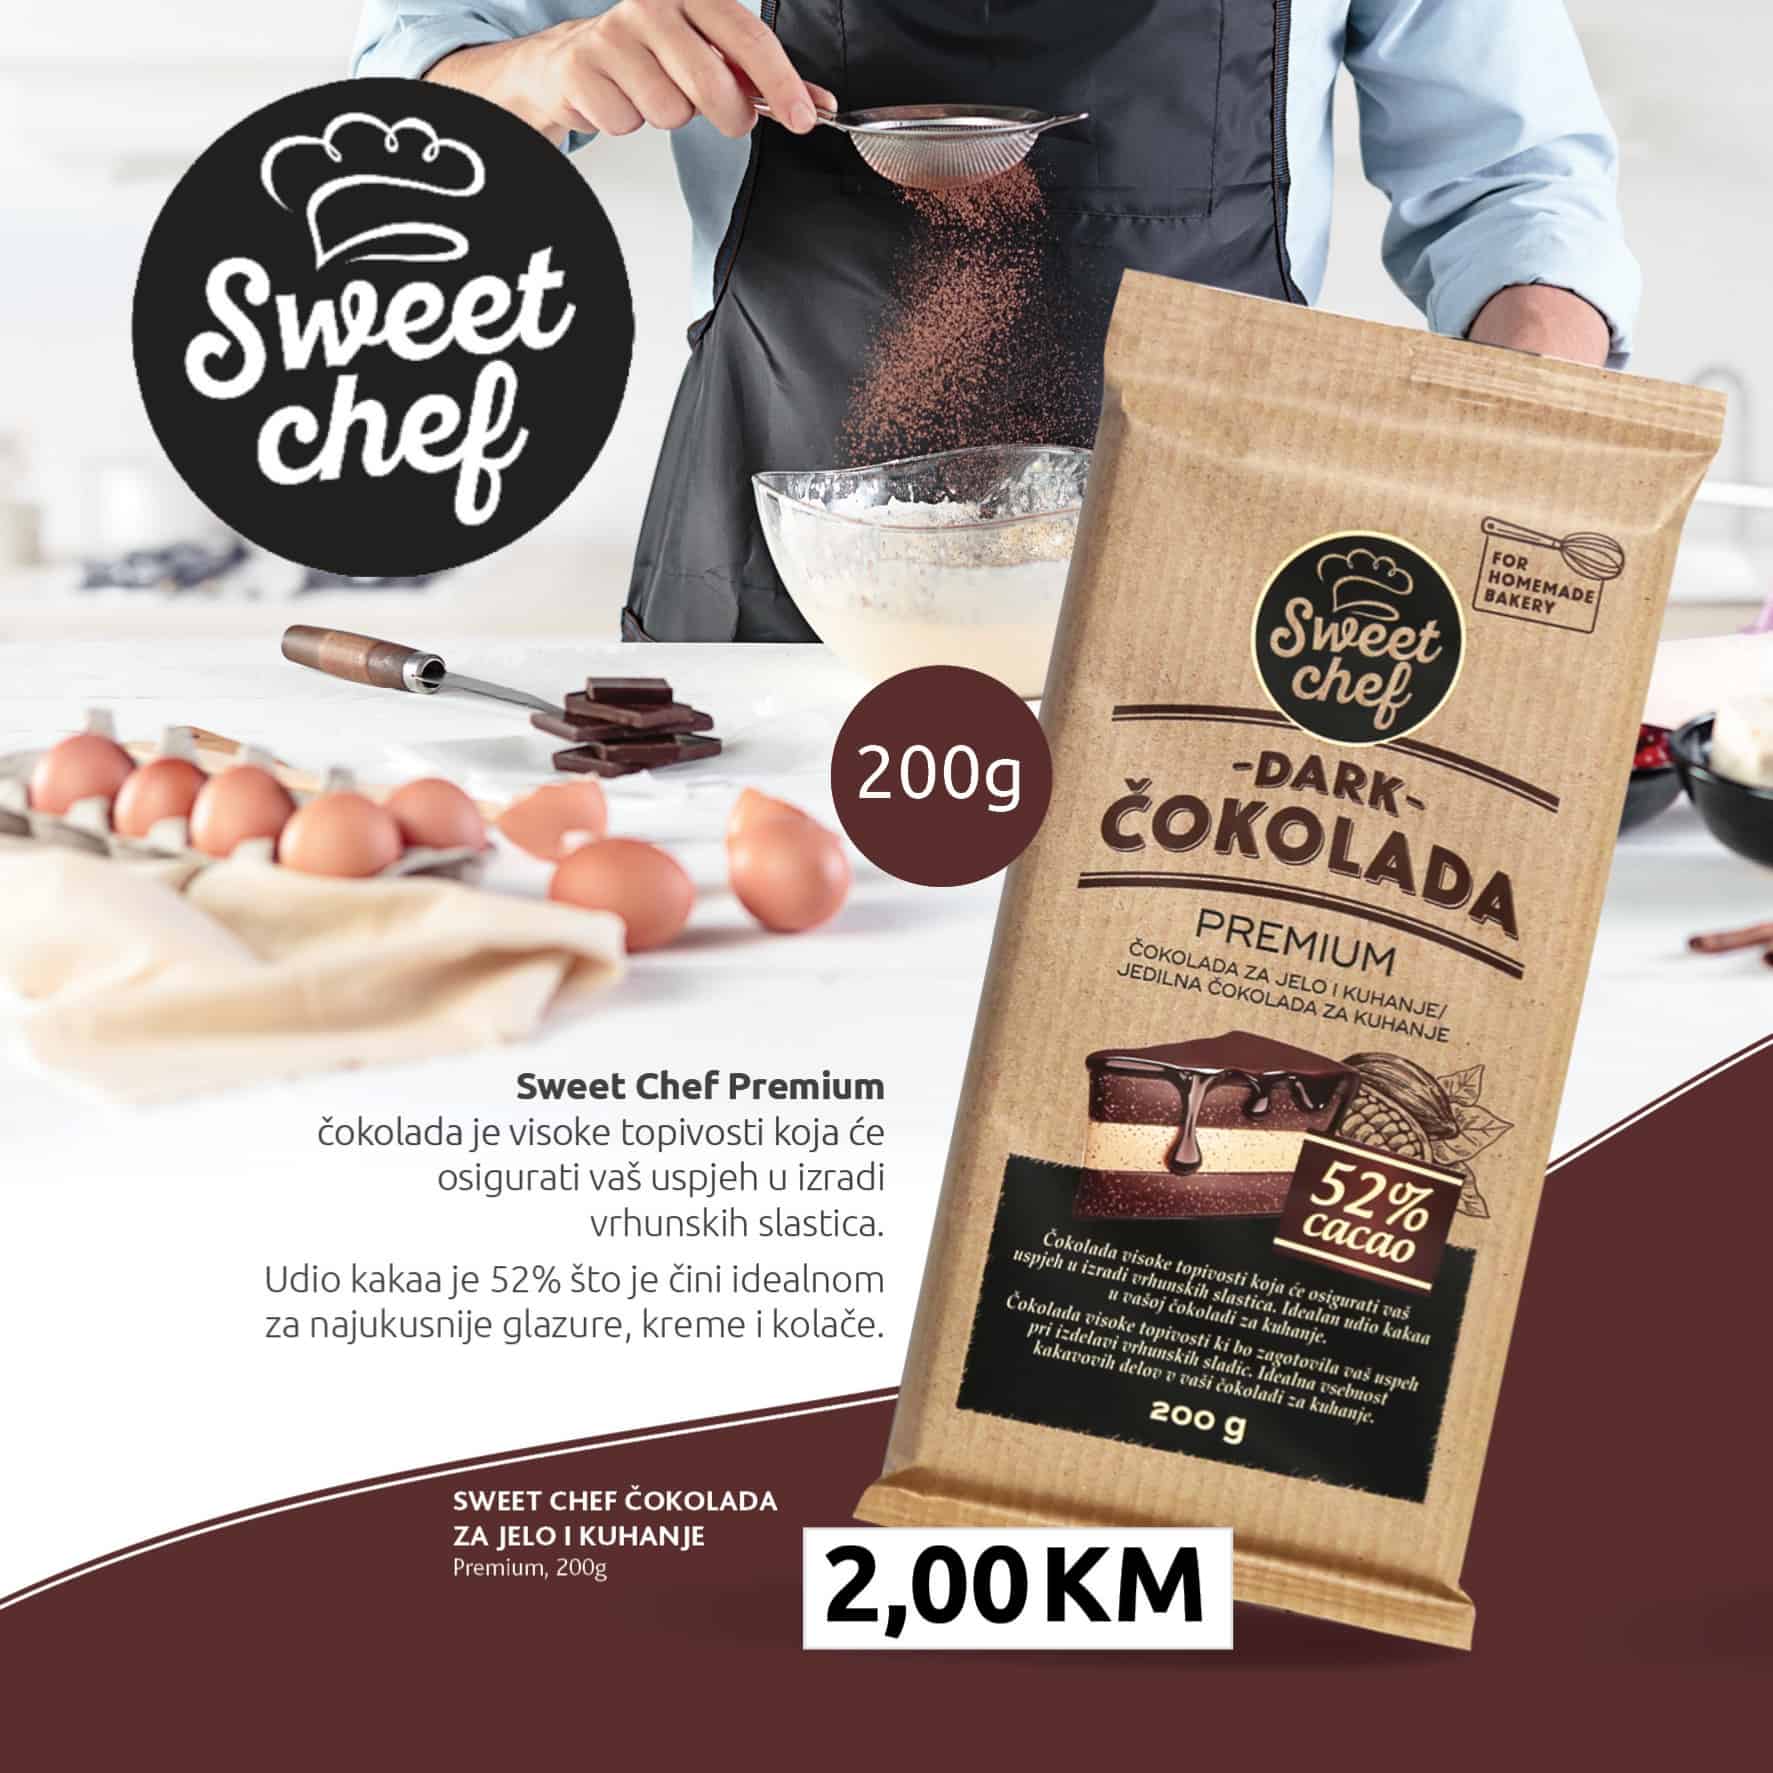 Konzum katalog donosi nam Sweet chef čokoladu po super cjeni od 2 KM!